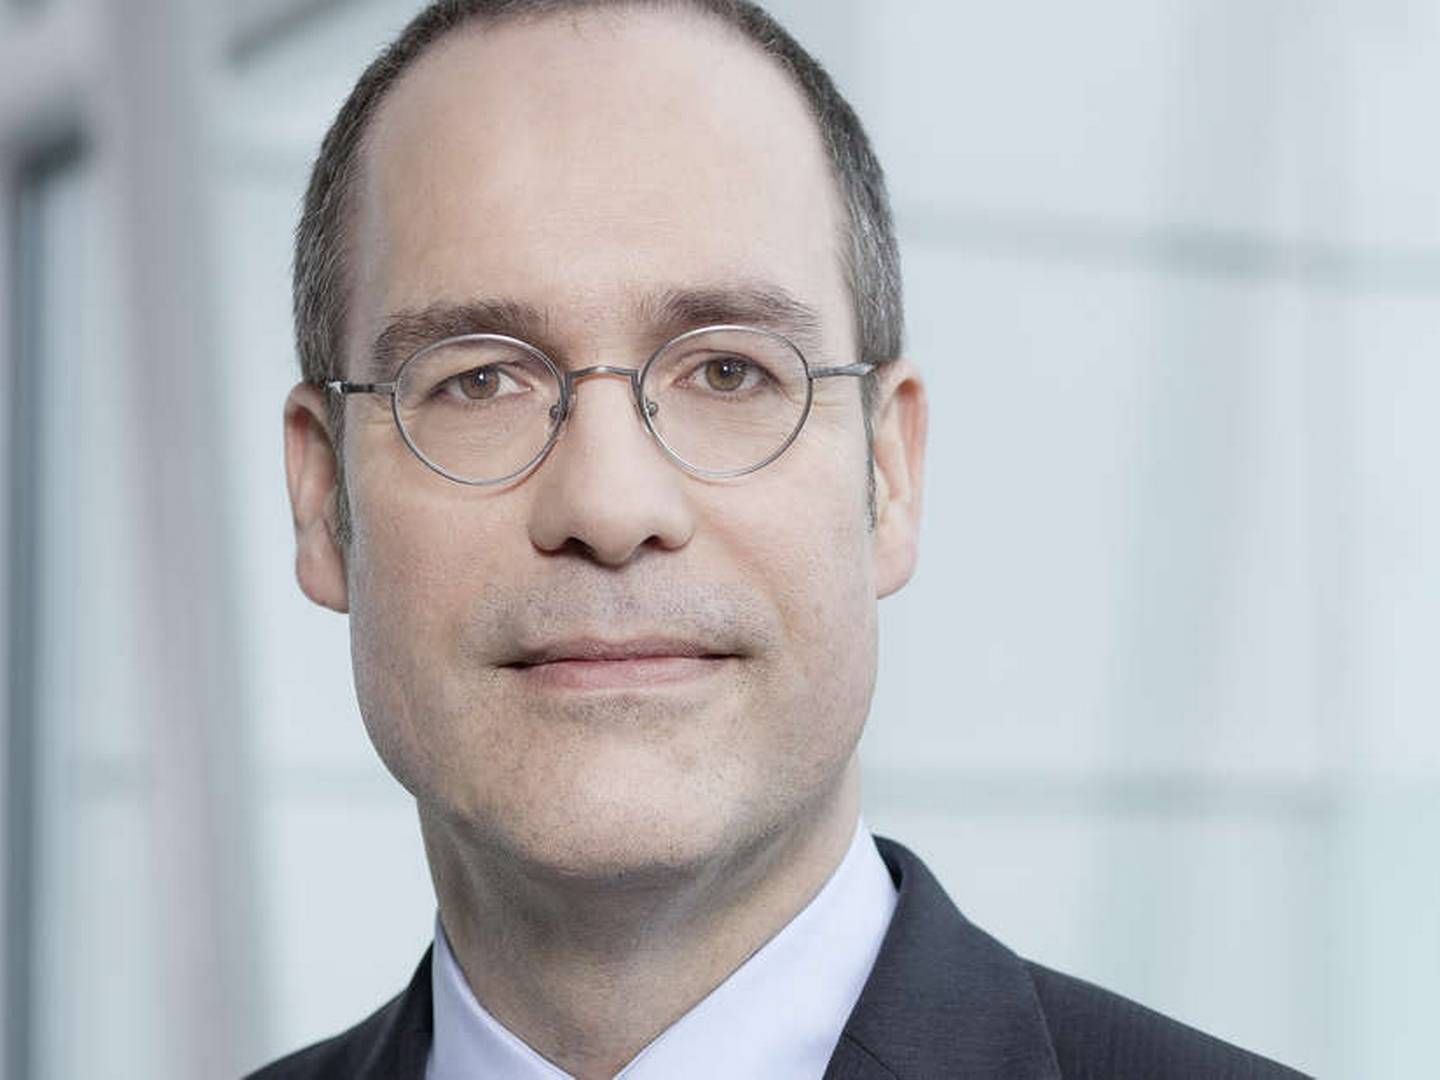 Jörg Krämer, Chefvolkswirt der Commerzbank | Foto: Commerzbank